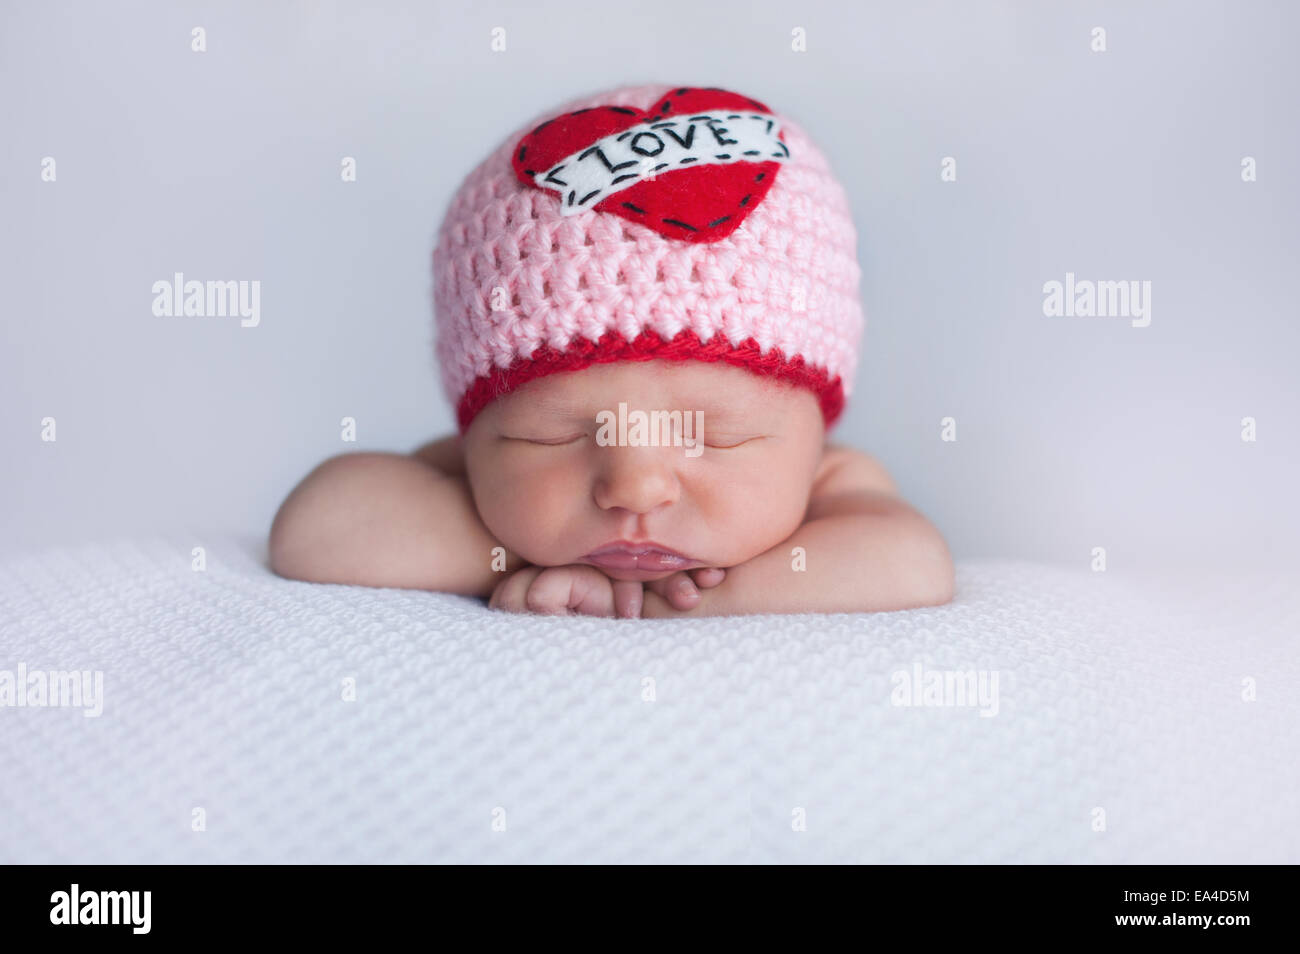 Porträt von einem sieben Tage alten schlafenden Baby Mädchen tragen eine gehäkelte Mütze 'Love'. Niedliche Schuss für den Valentinstag zu verwenden. Stockfoto